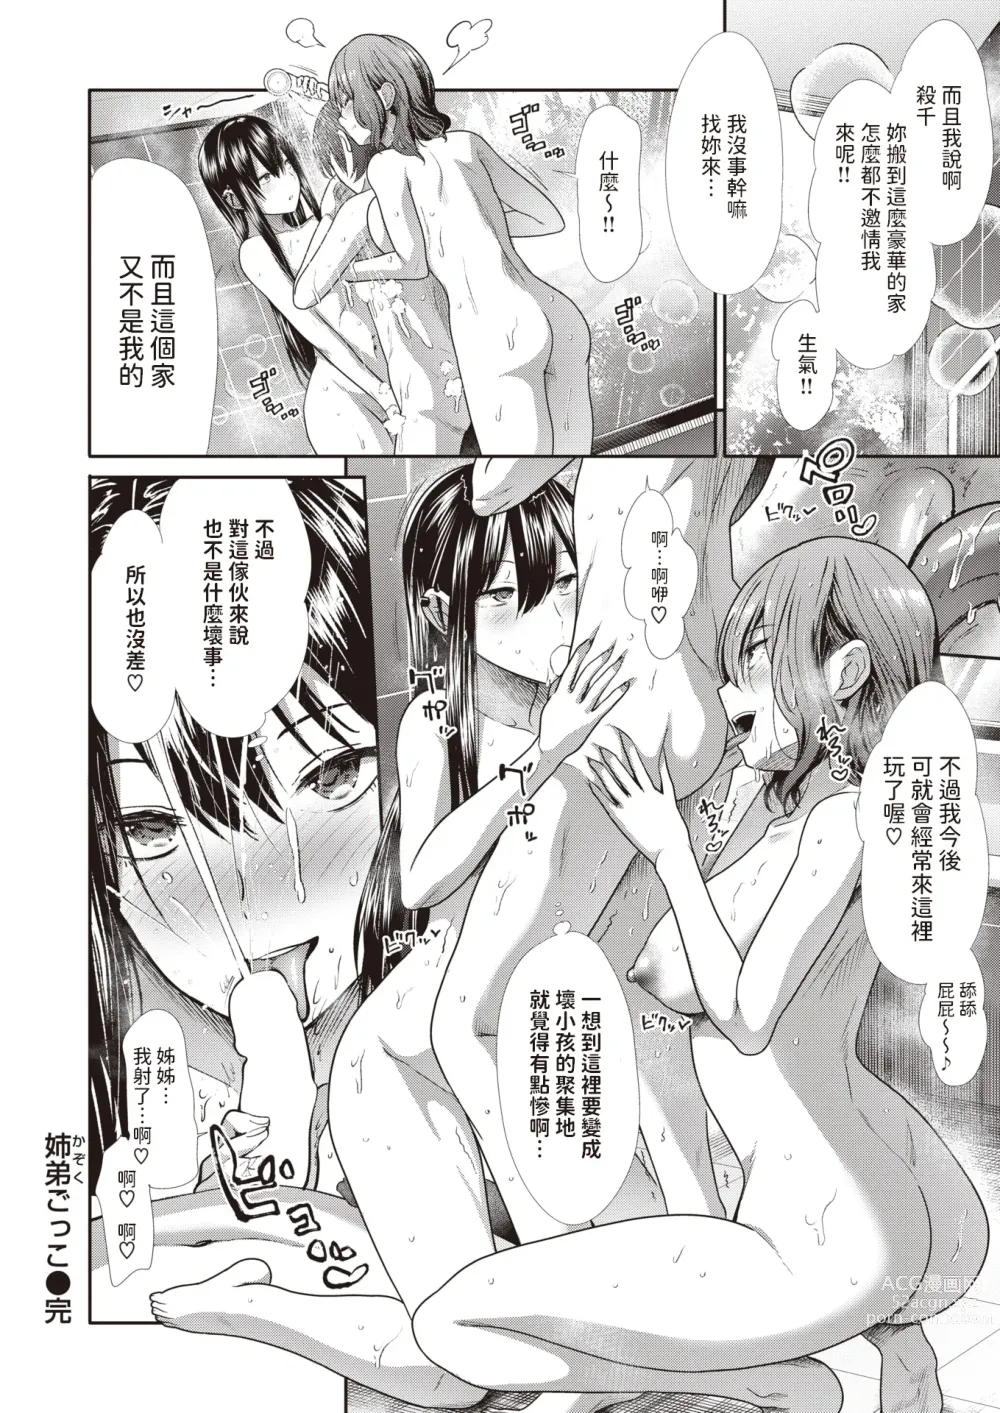 Page 26 of manga Kazoku Gokko